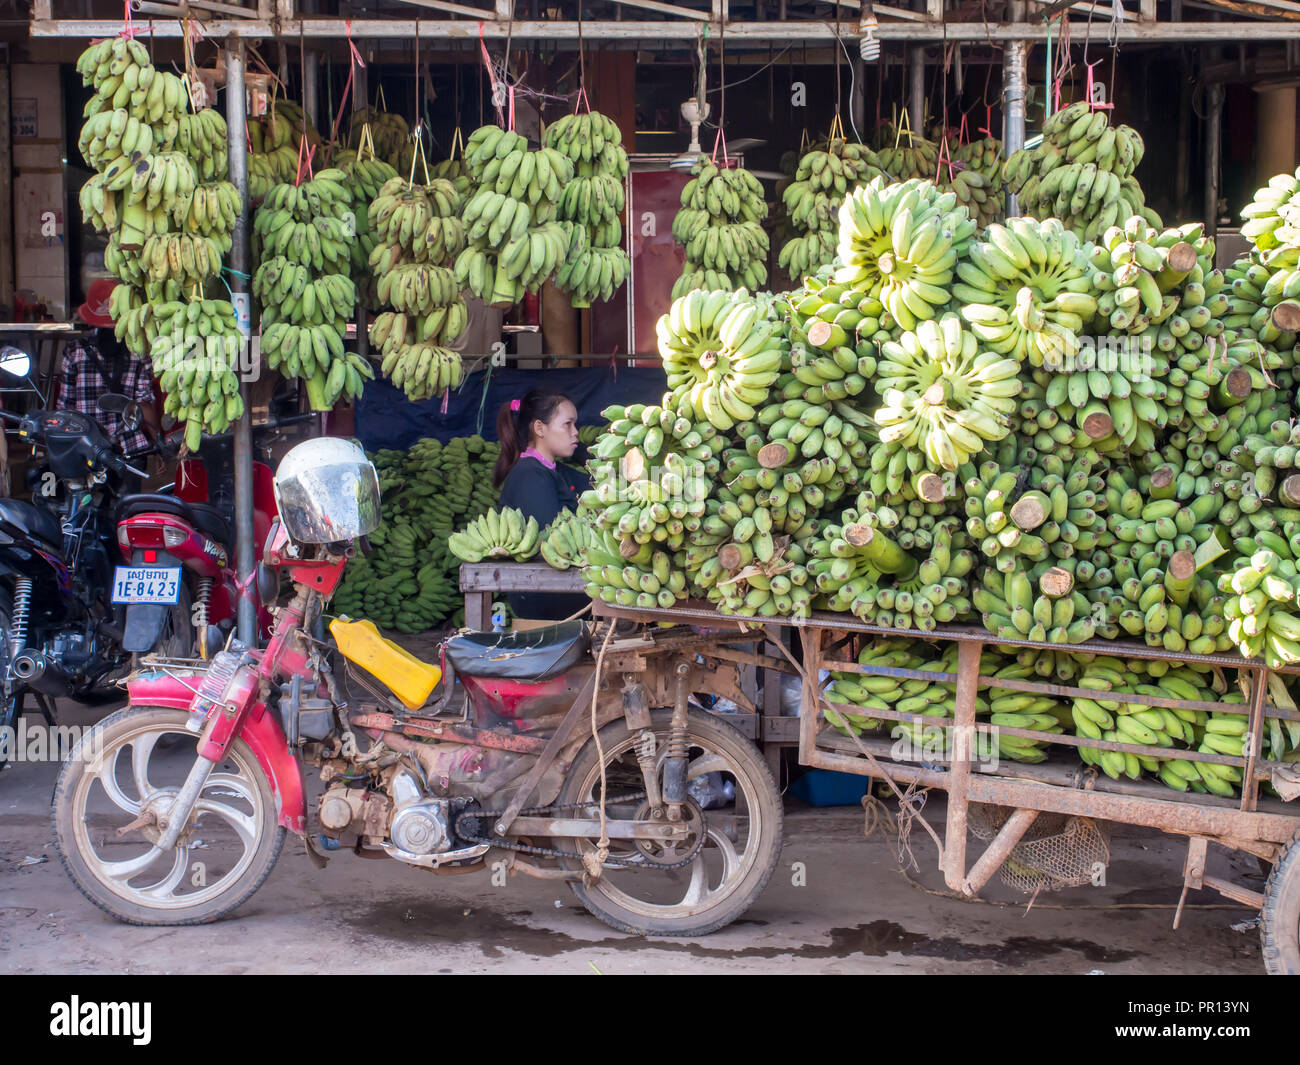 Panier moto transportant une lourde charge de bananes, Siem Reap, Cambodge, Indochine, Asie du Sud-Est, l'Asie Banque D'Images